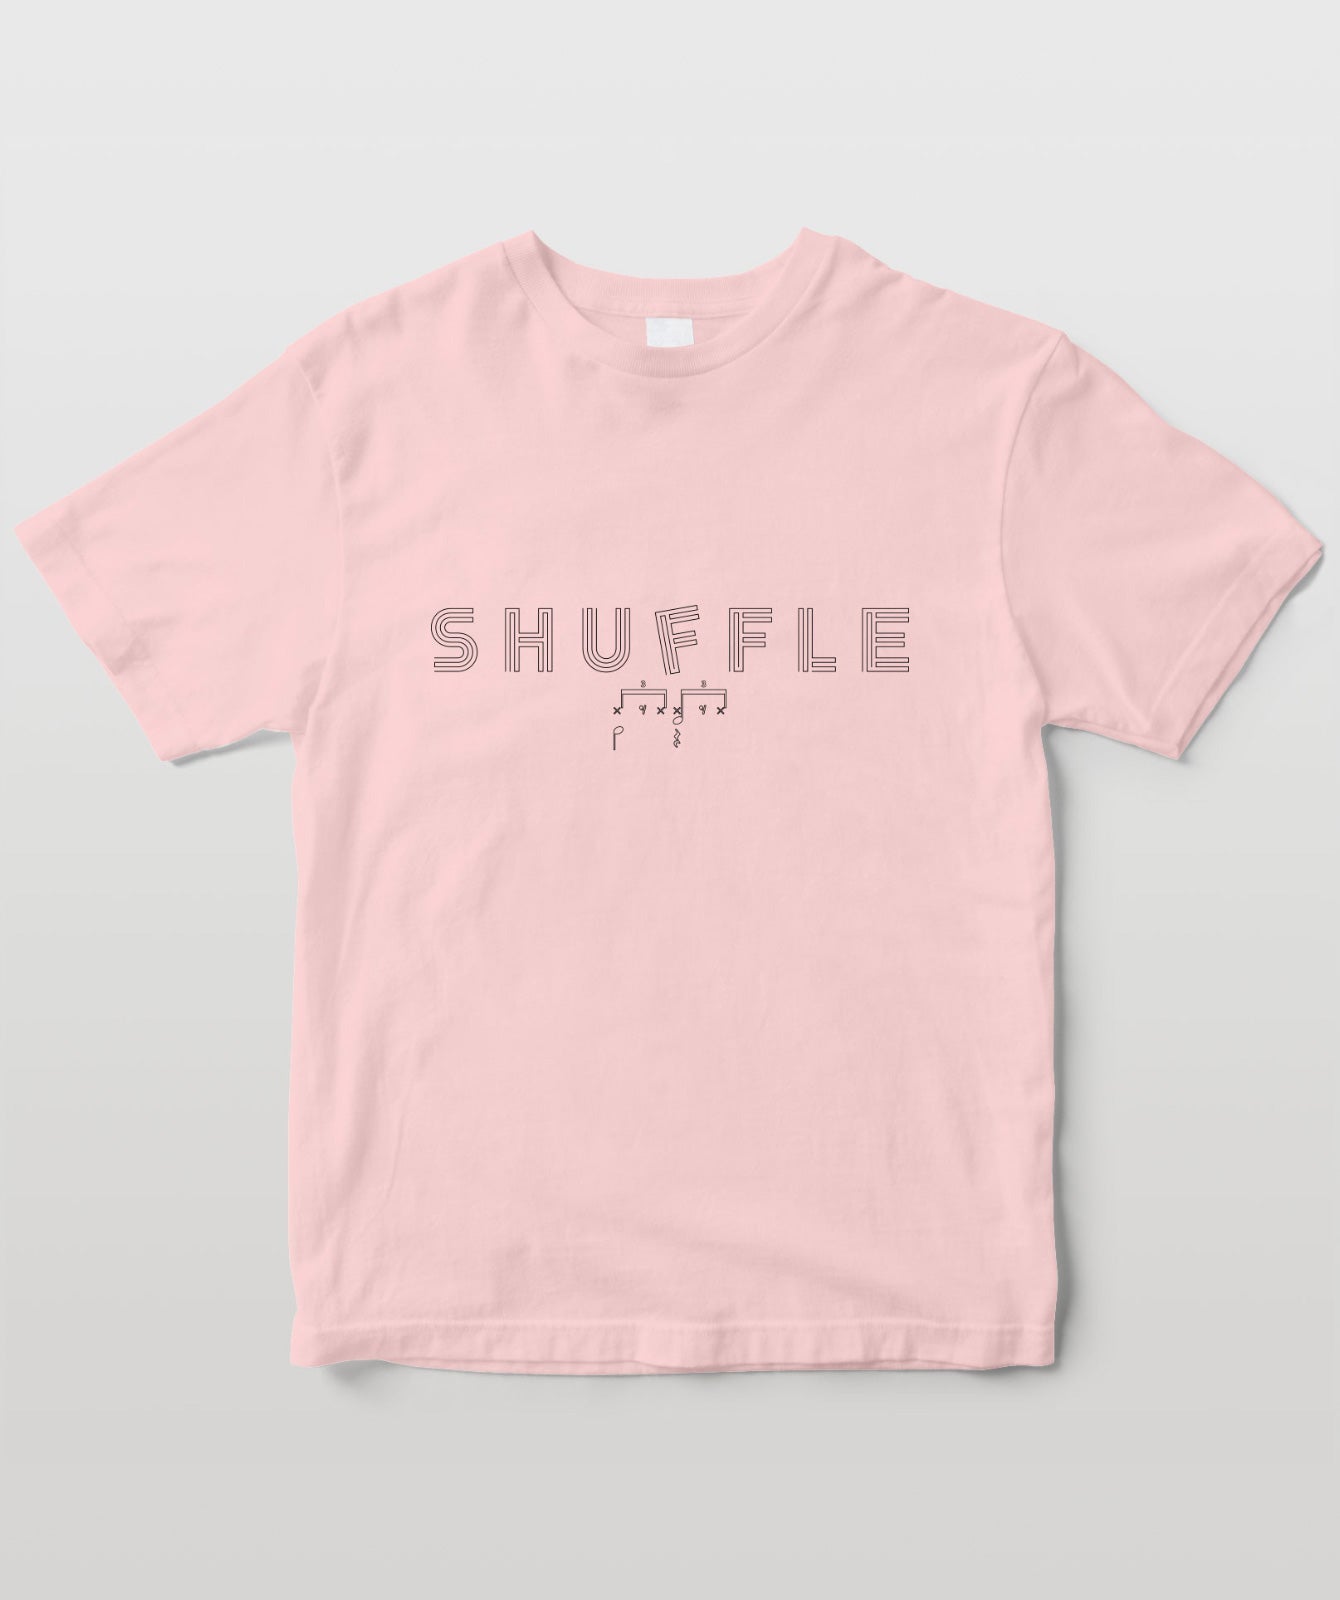 リズム・パターン Tシャツ “Shuffle”